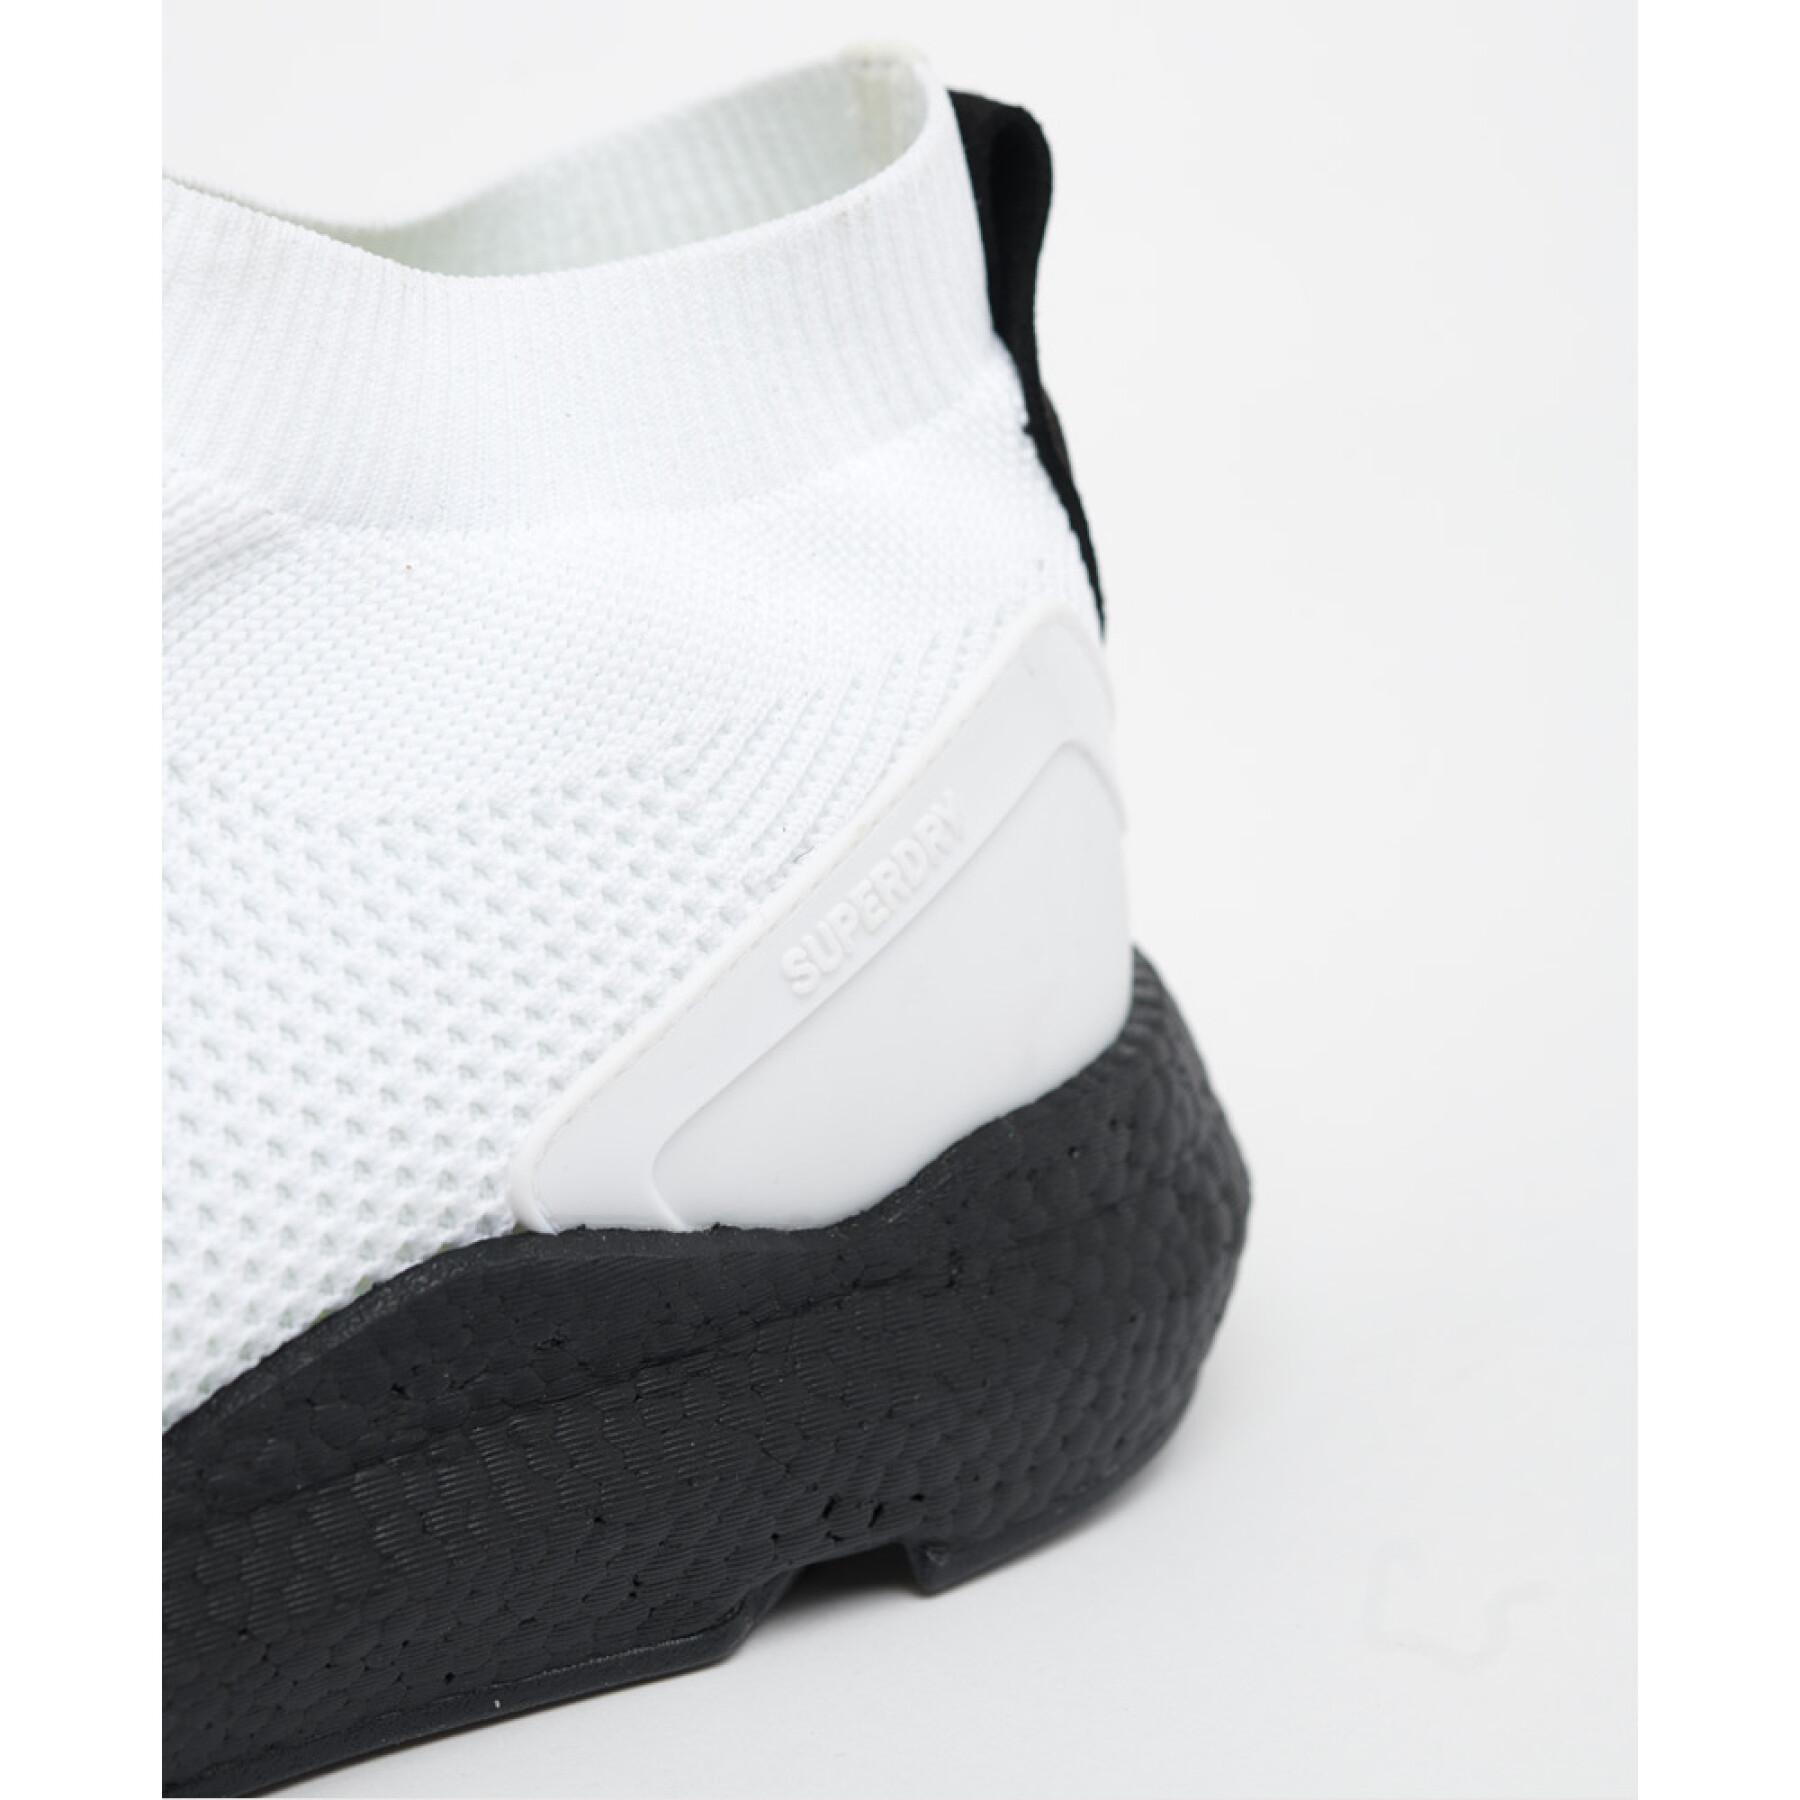 Högklackade sneakers Superdry Agile 2.0